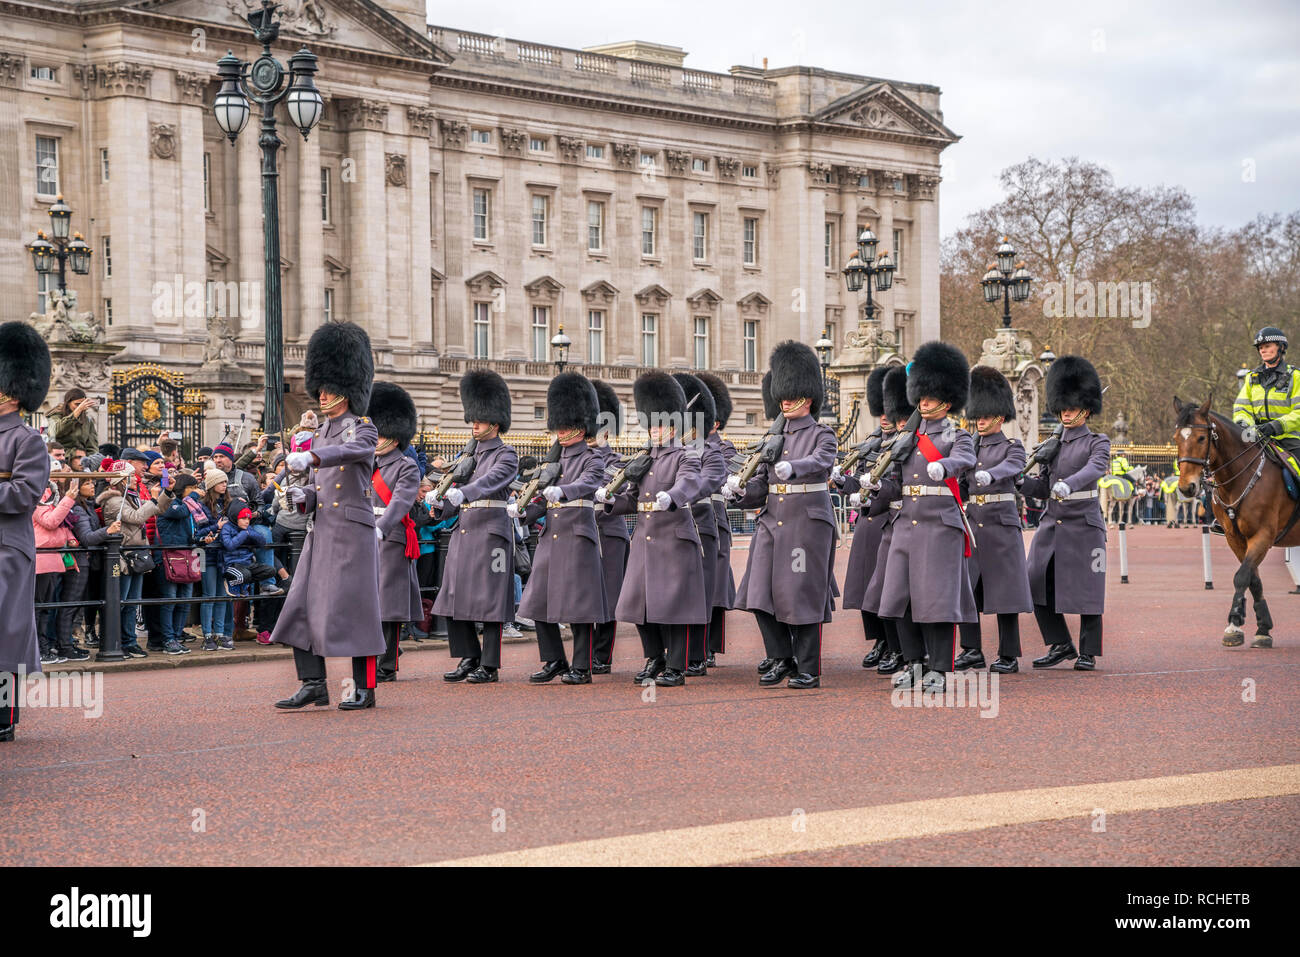 Traditionelle Wachablösung Ändern der Guard vor dem Buckingham Palace, London, Vereinigtes Königreich Großbritannien, Europa | traditionelle Zeremonie Stockfoto